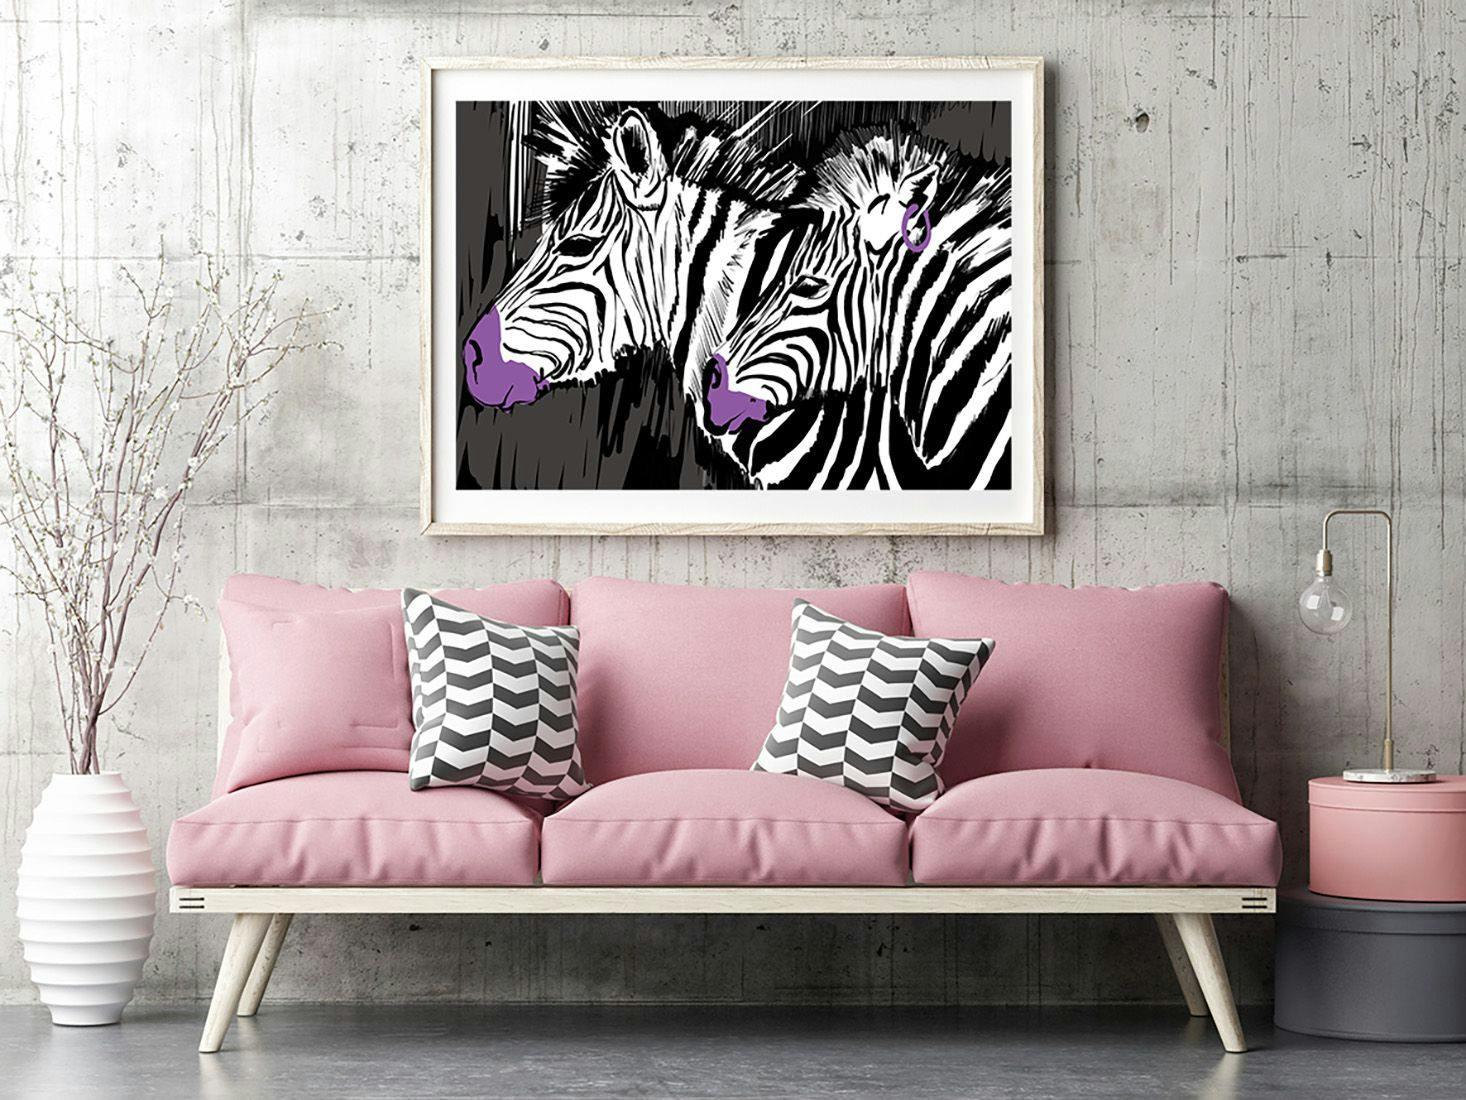 Plakat z zebrami w klasycznych kolorach.